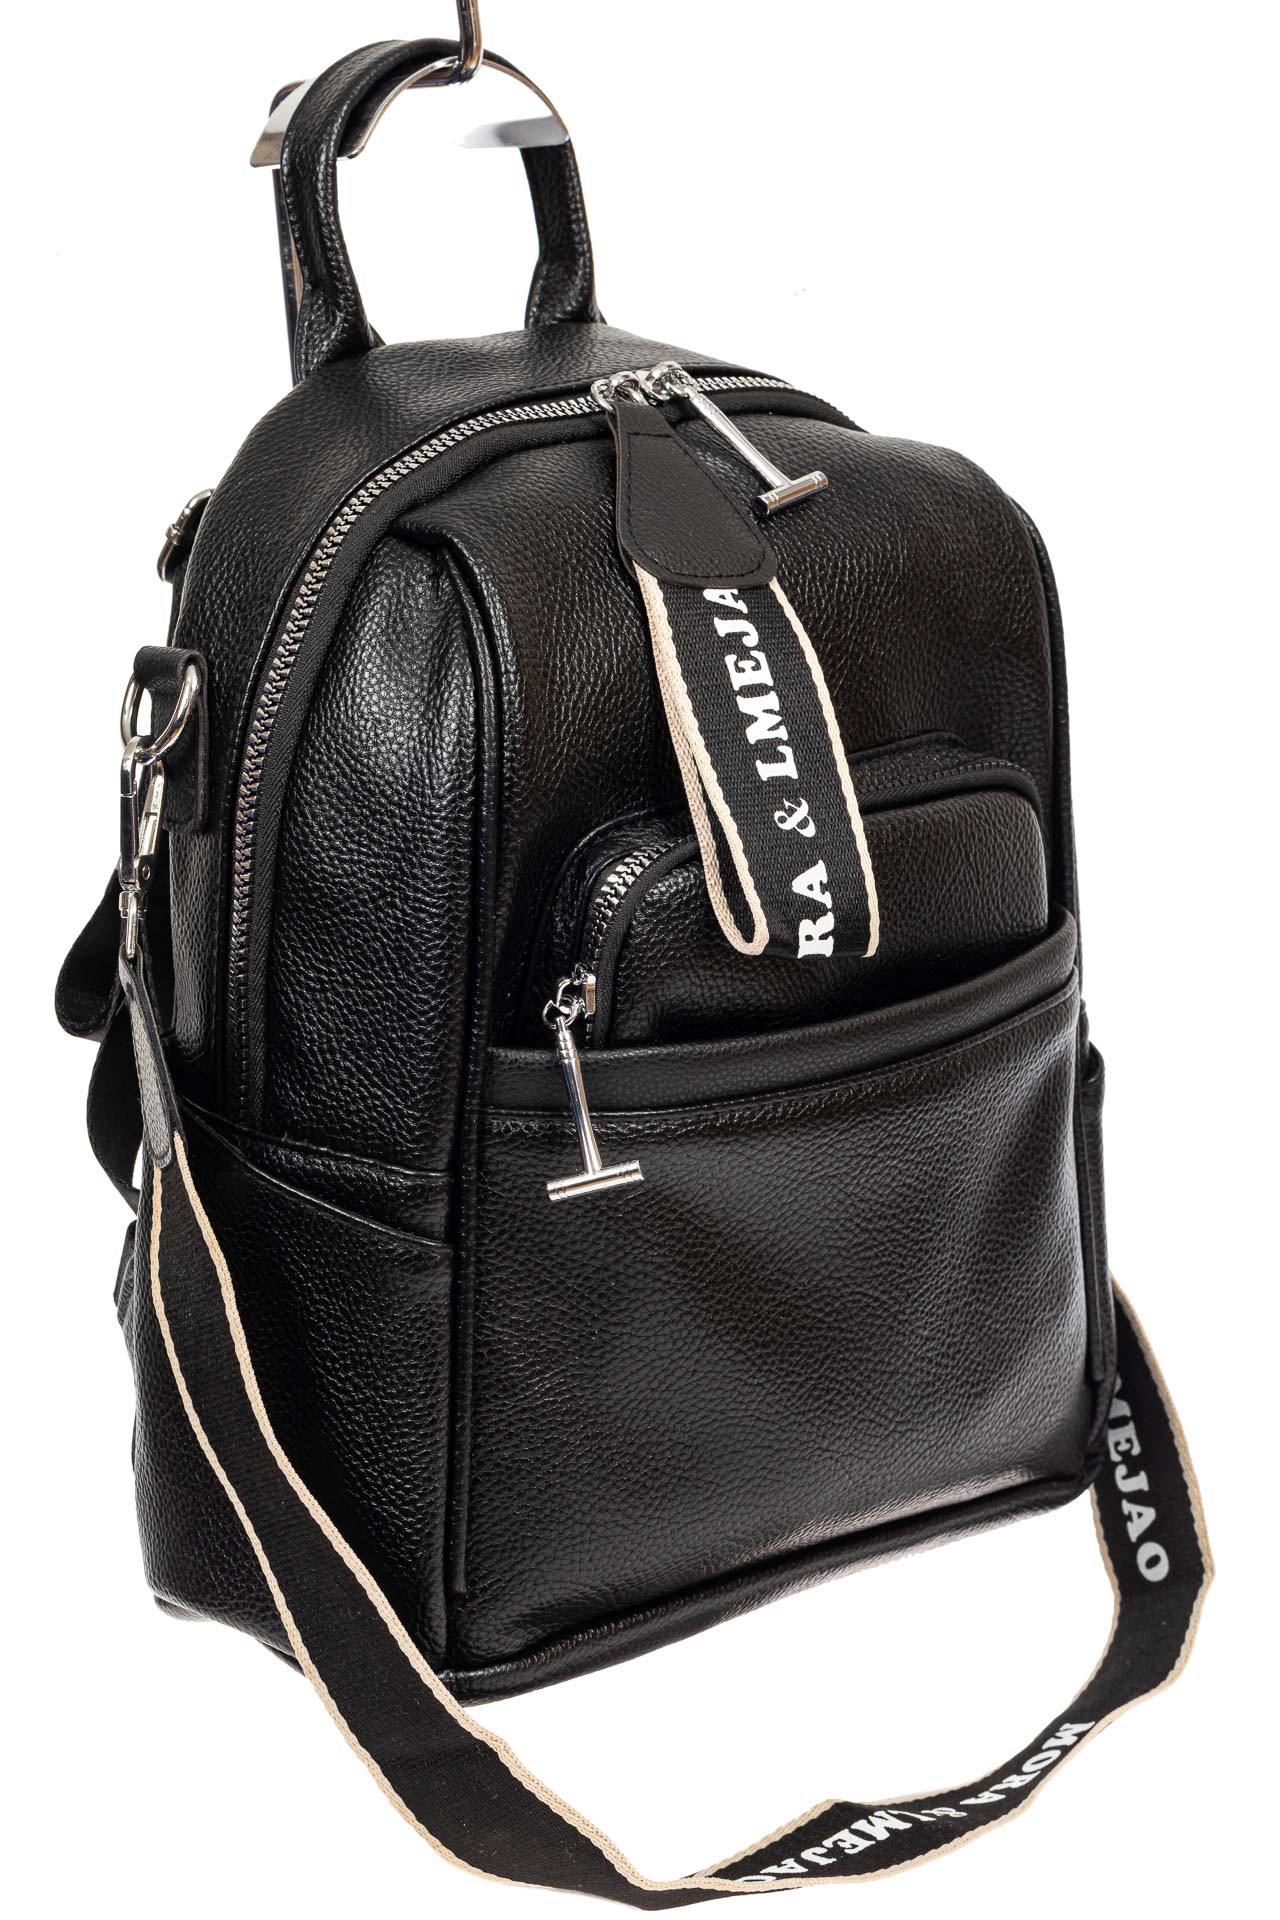 Женская сумка-рюкзак из искусственной кожи, цвет чёрный